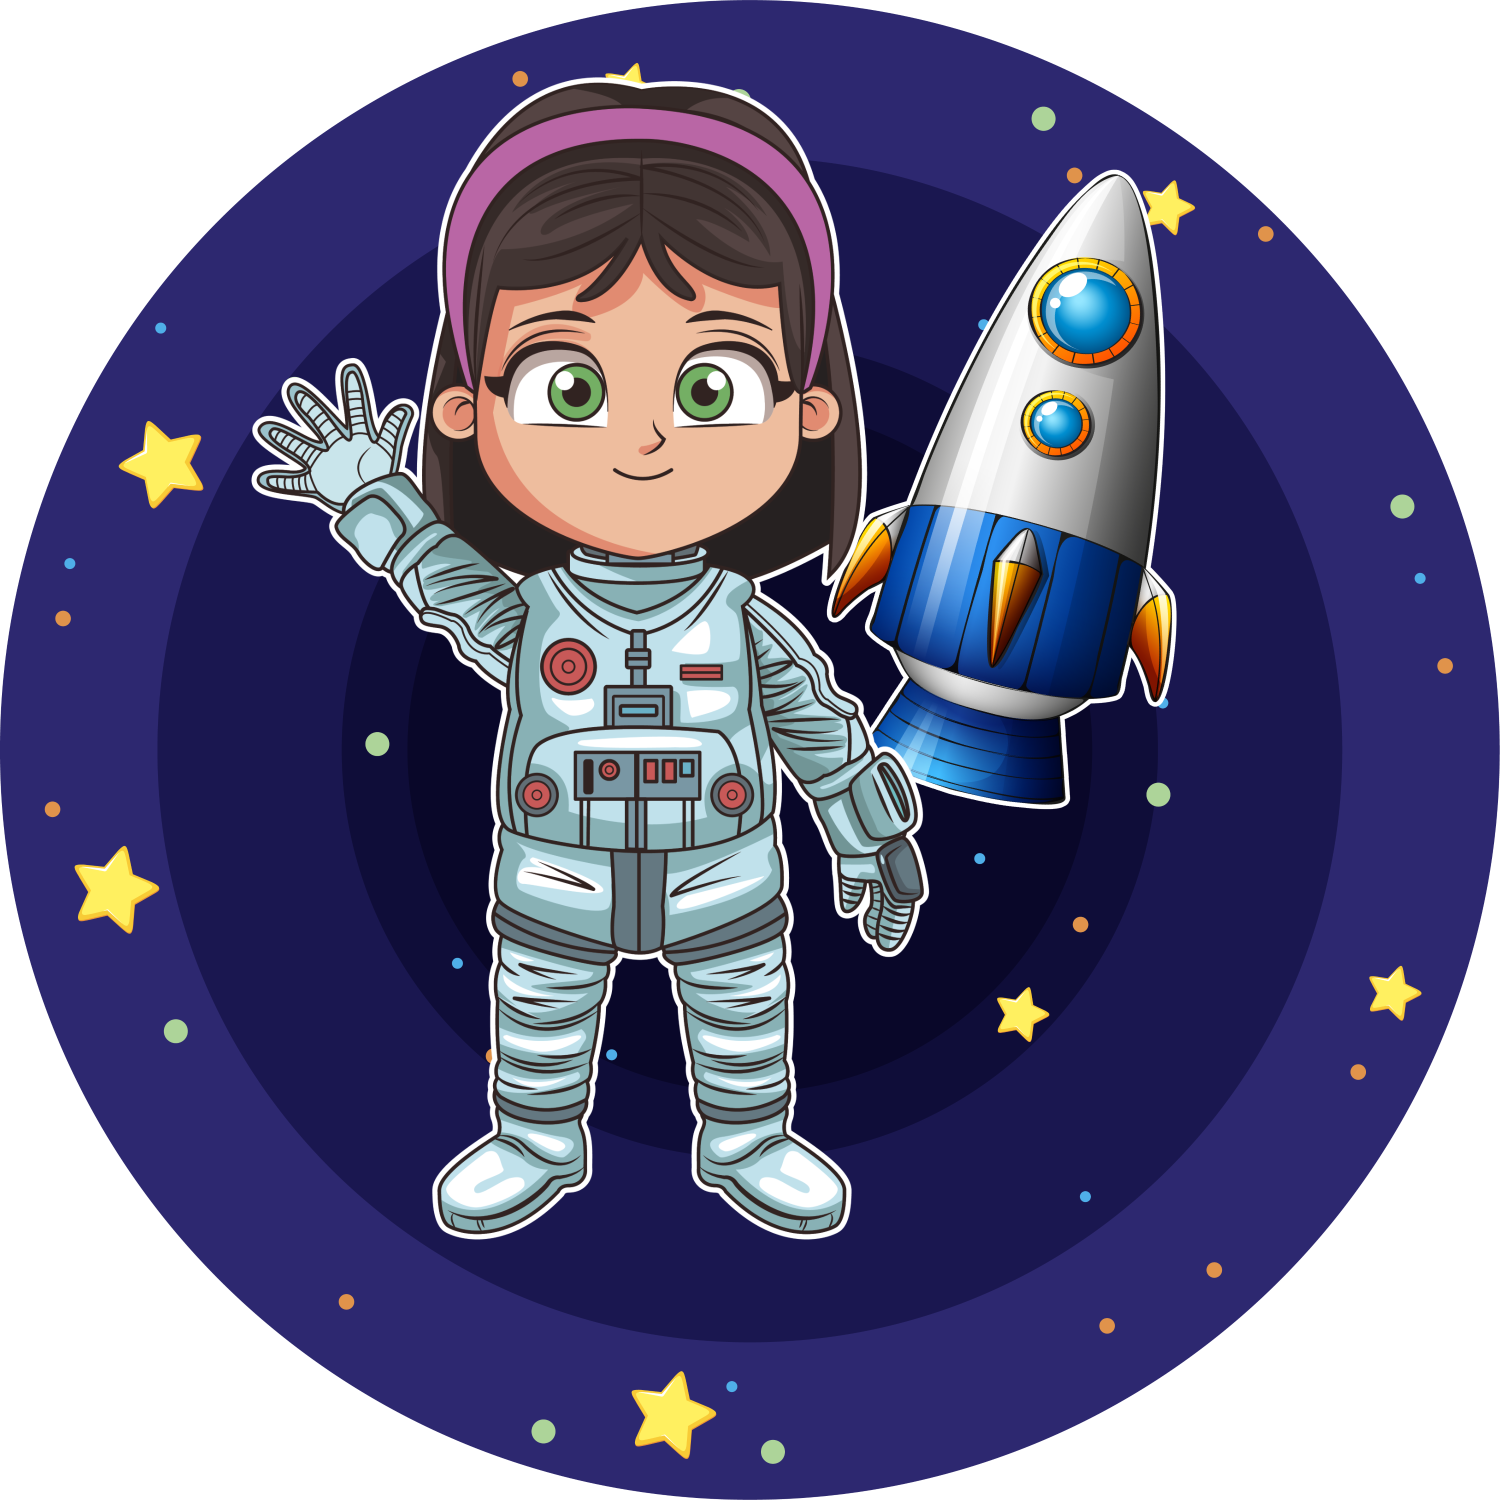 Детям о космосе и космонавтах. Космонавт мультяшный. Детям о космосе. Космическая тематика для детей. Космическая тема для детей.